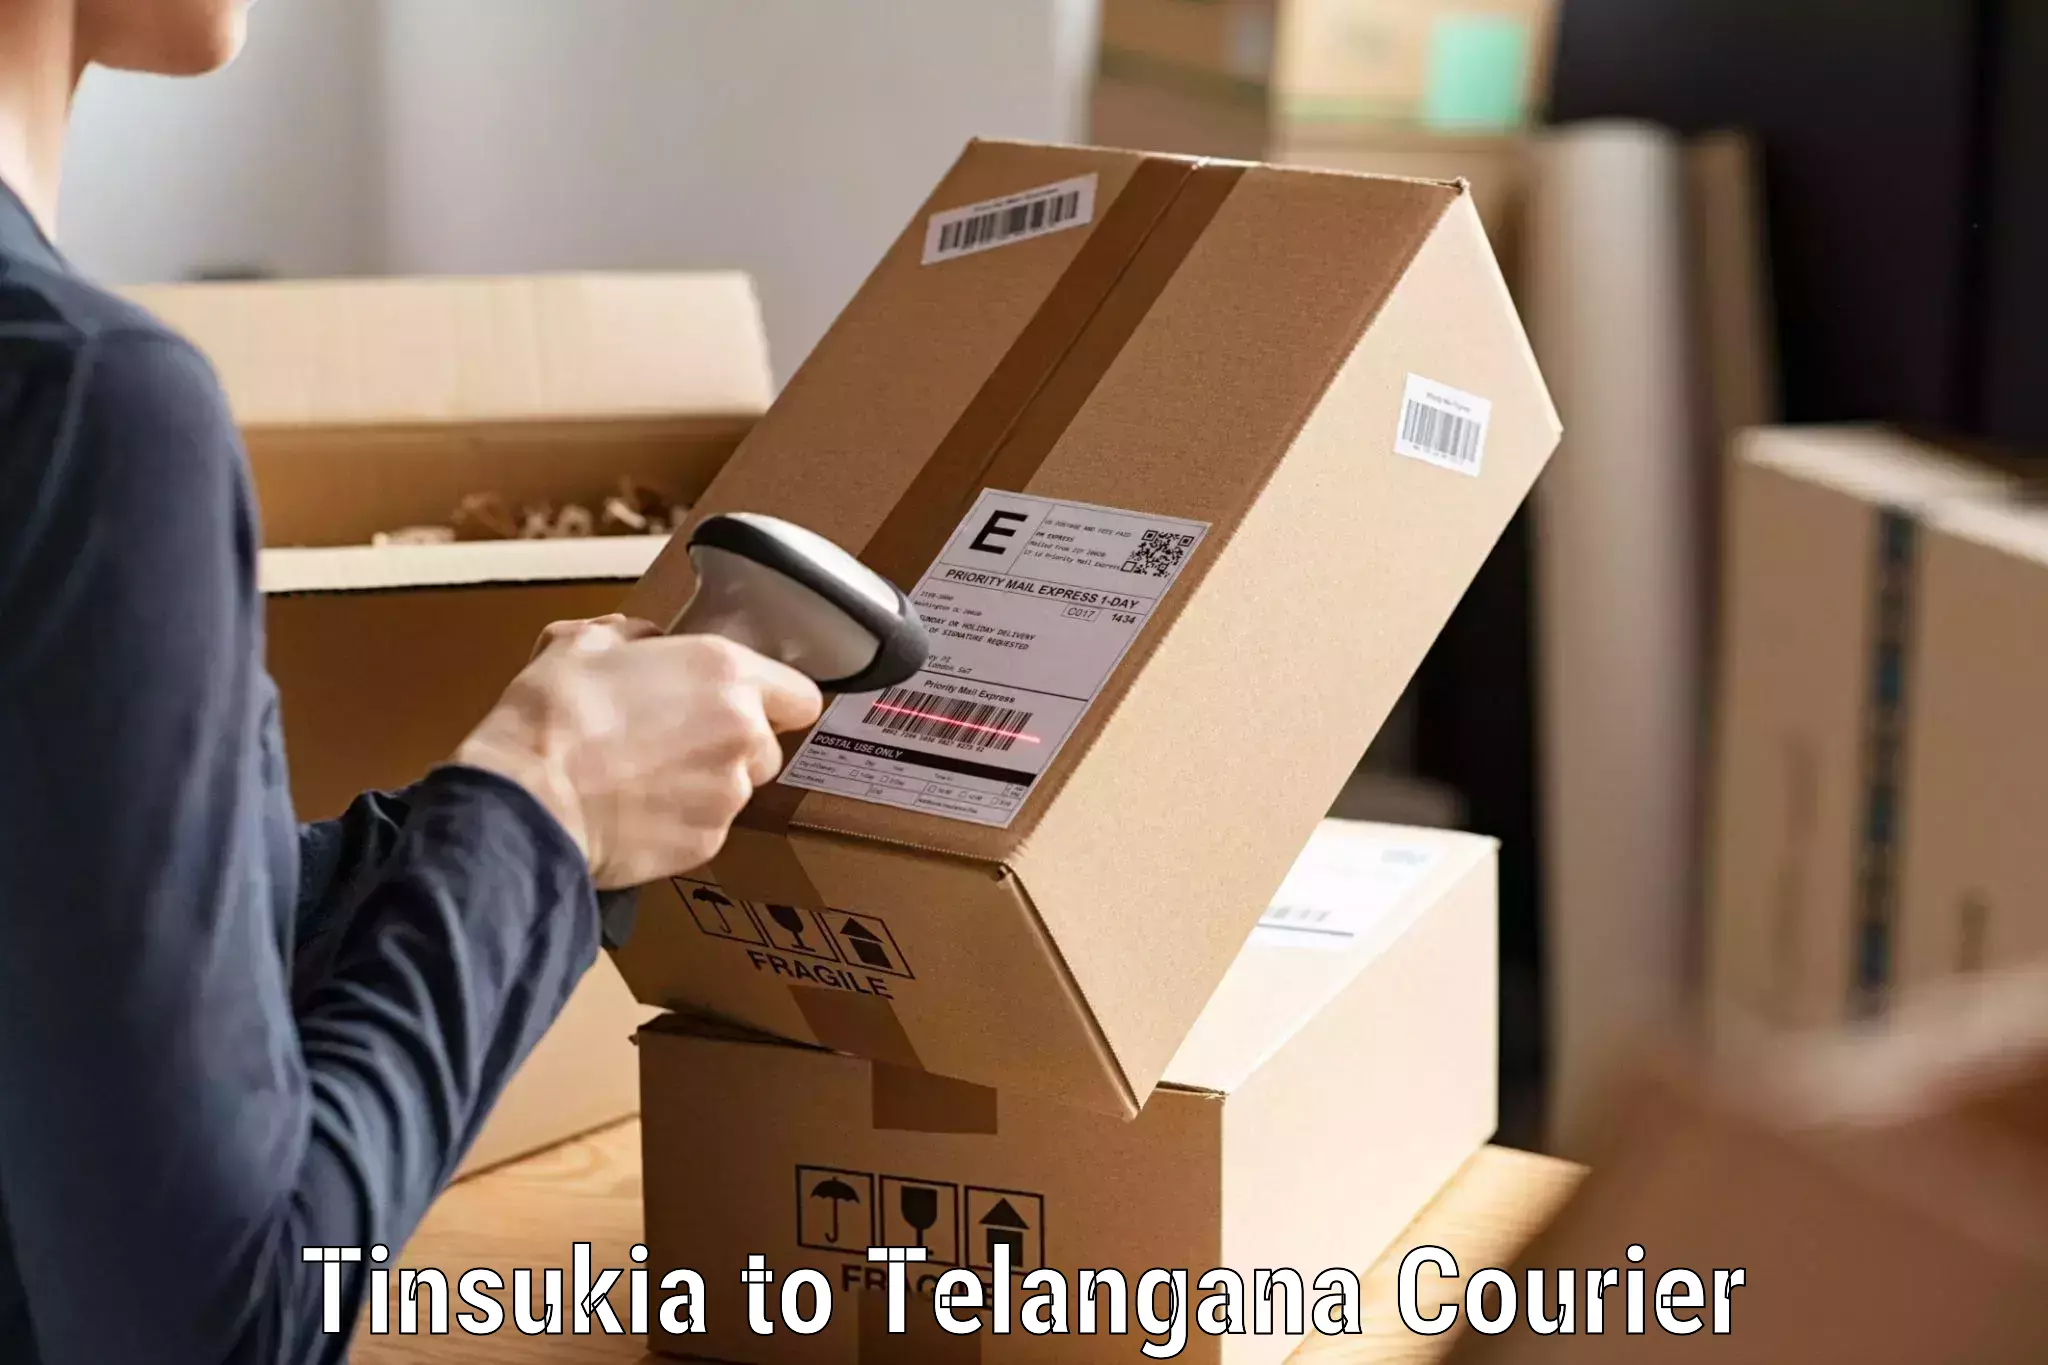 Advanced shipping technology Tinsukia to Yellandu